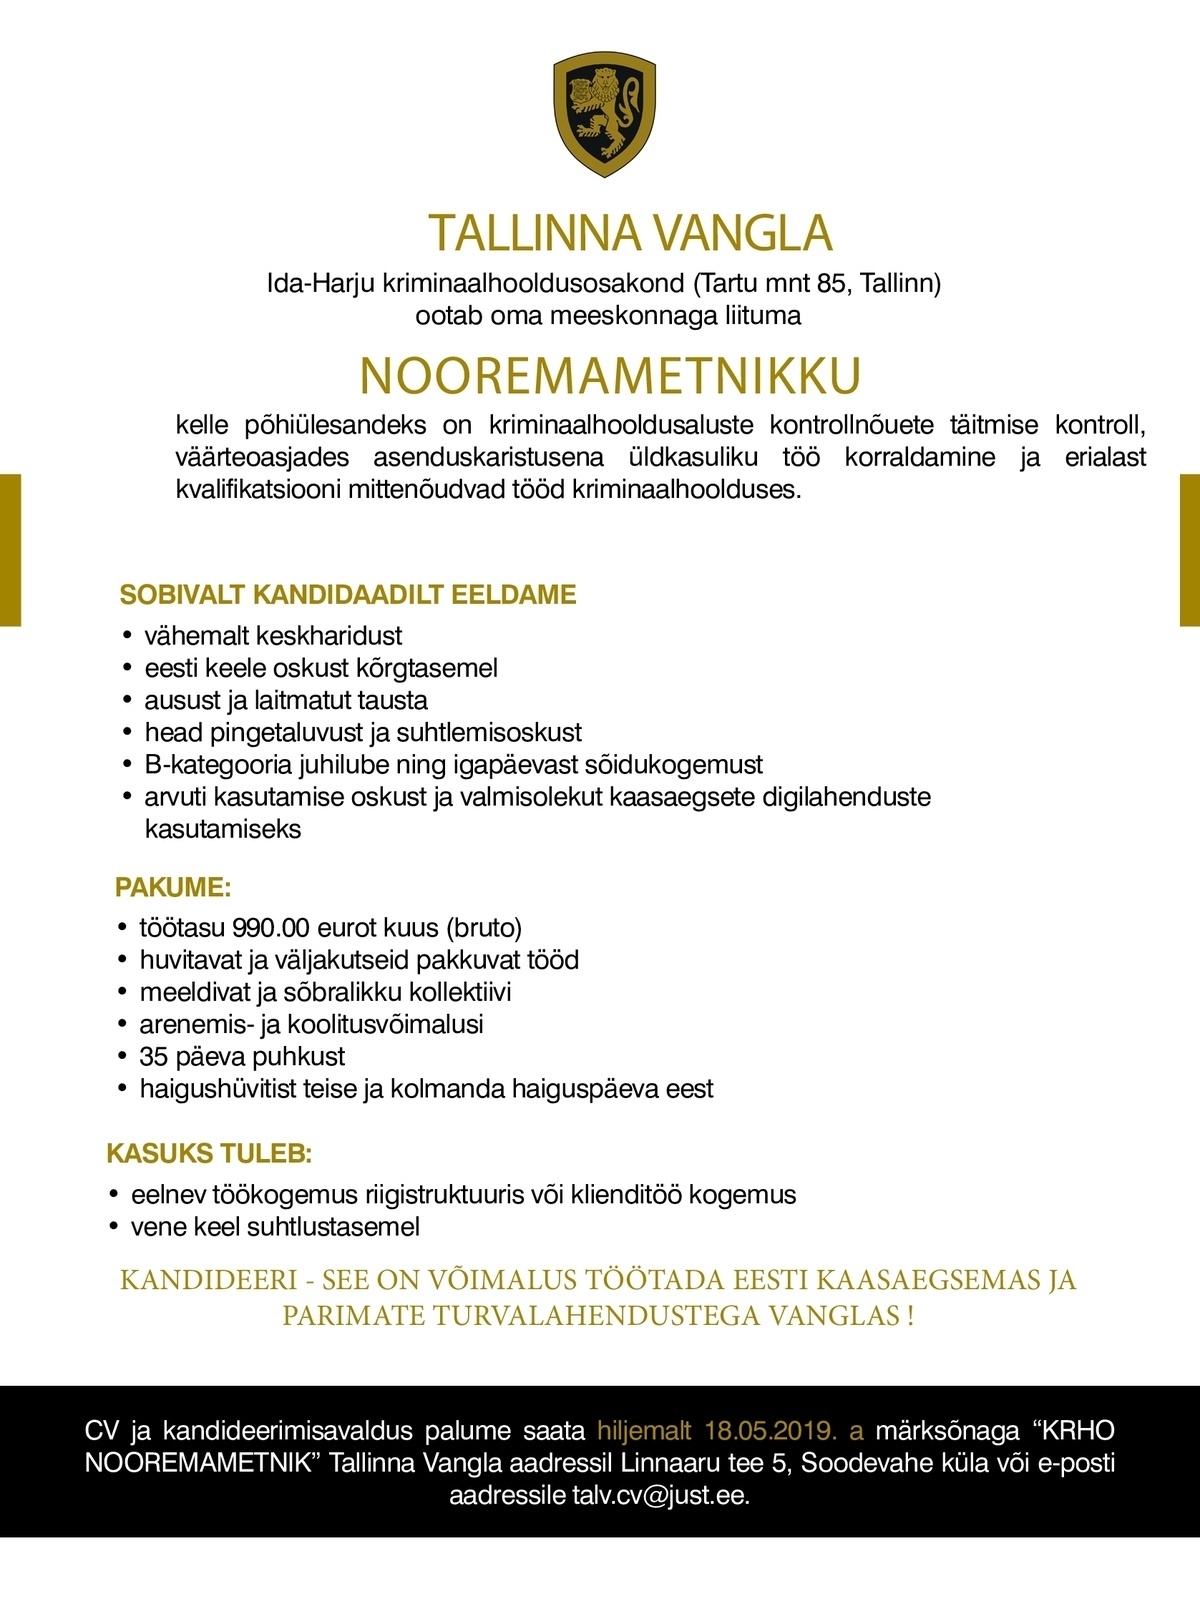 Tallinna Vangla Nooremametnik  (Ida-Harju kriminaalhooldusosakond)